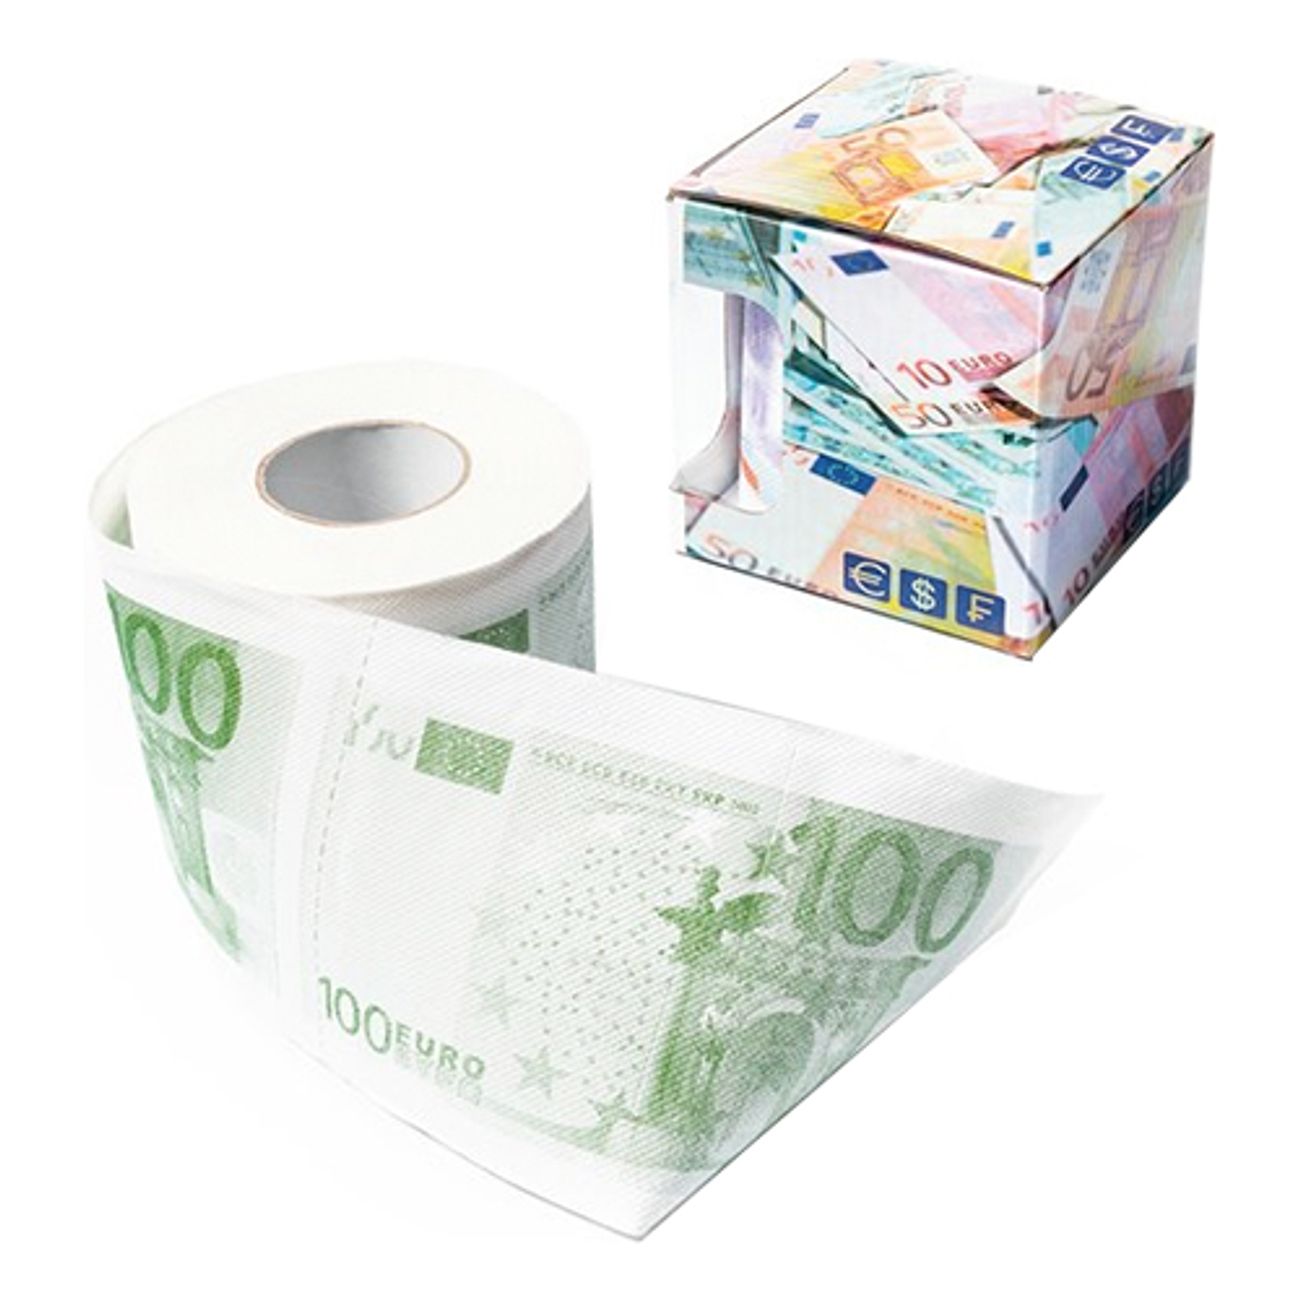 100-eur-toalettpapper-1